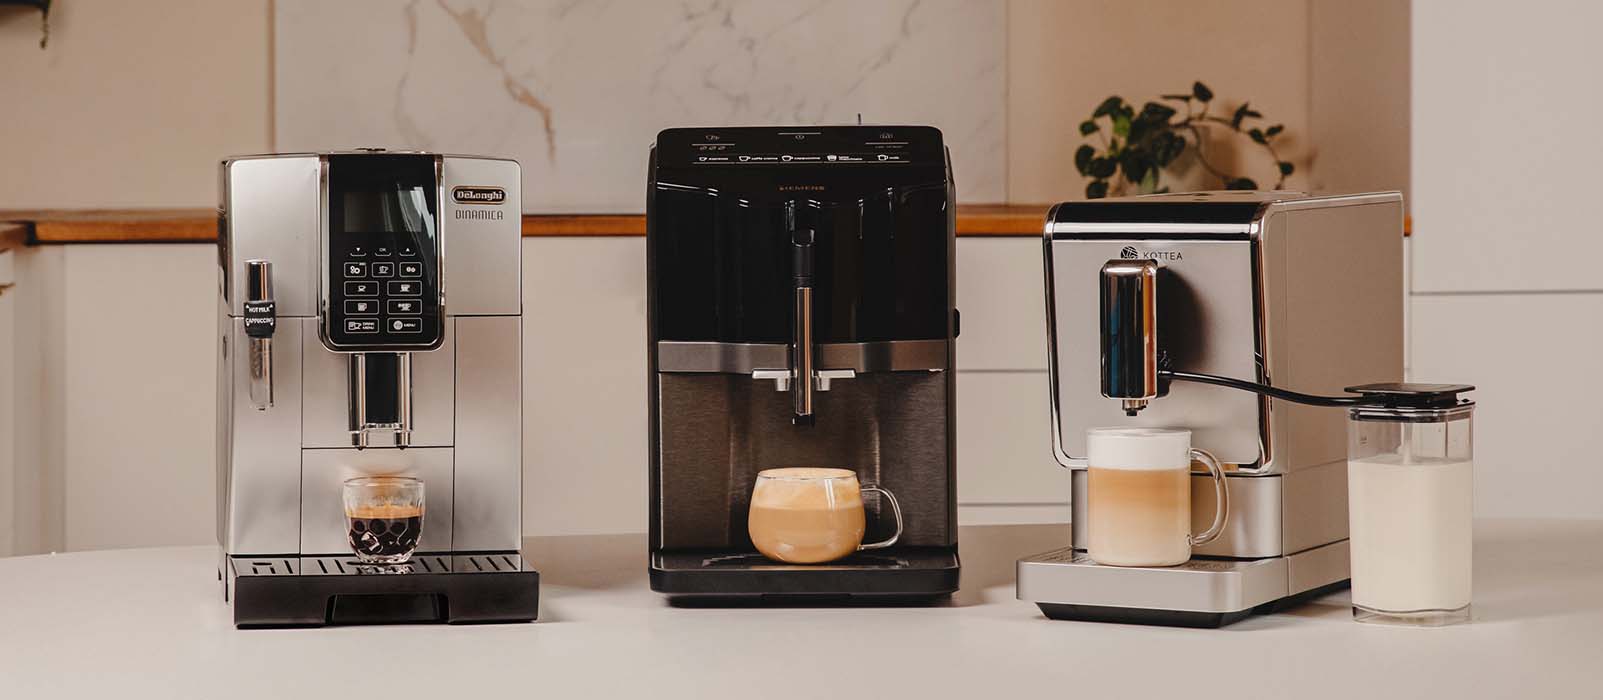 Top 10 des meilleures machines à café automatiques 2019 - Blog sur le café,  histoires, recettes